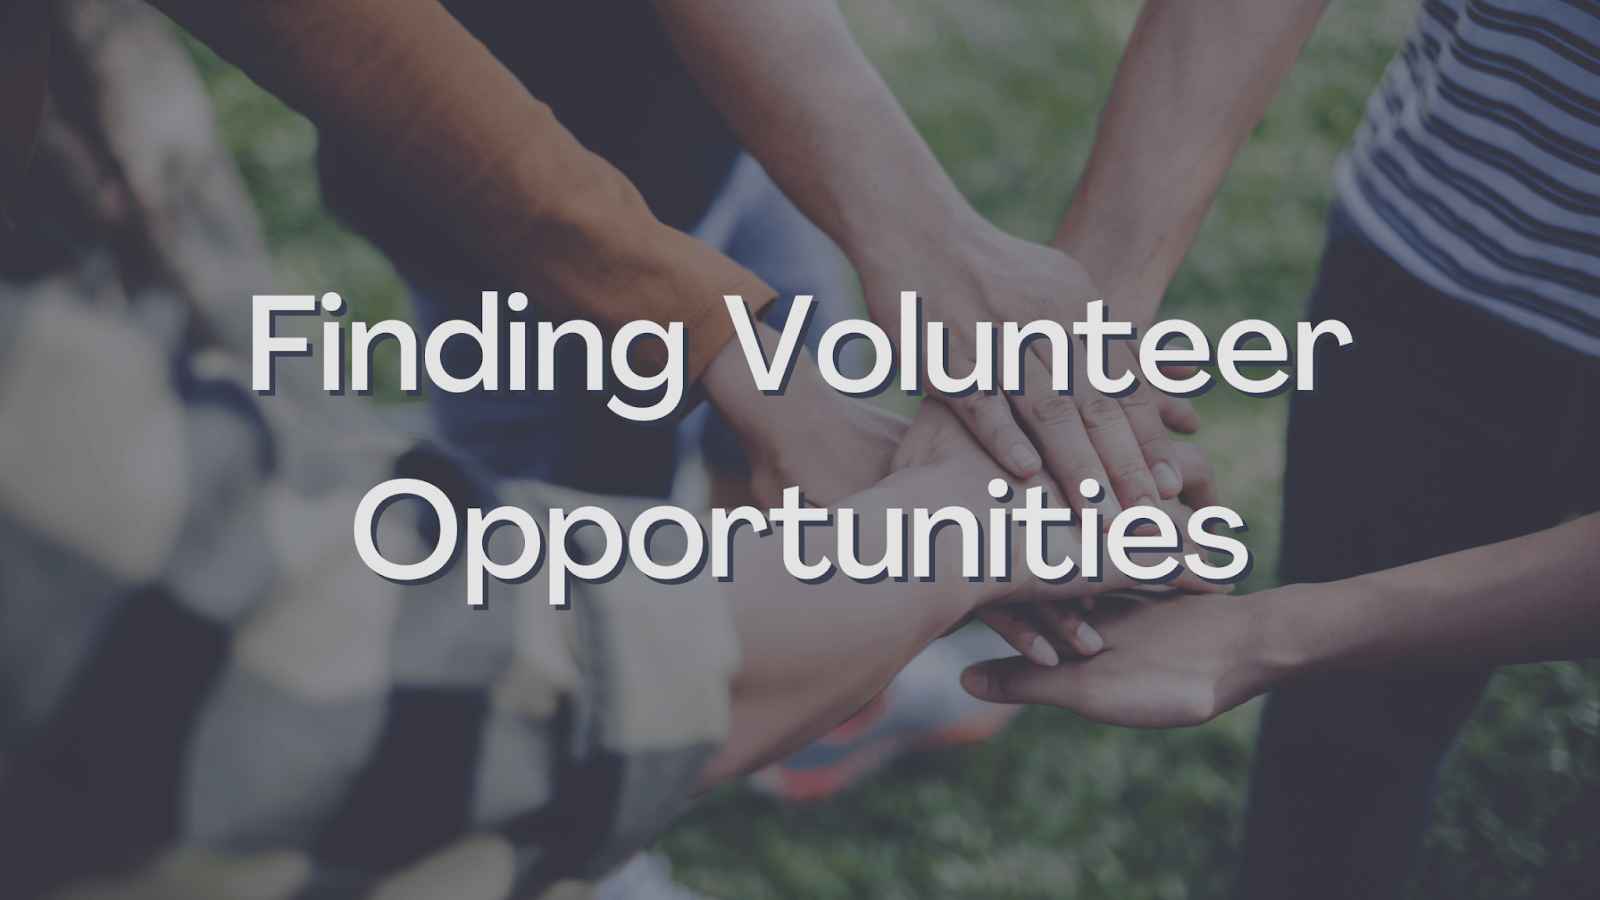 Finding Volunteer Opportunities